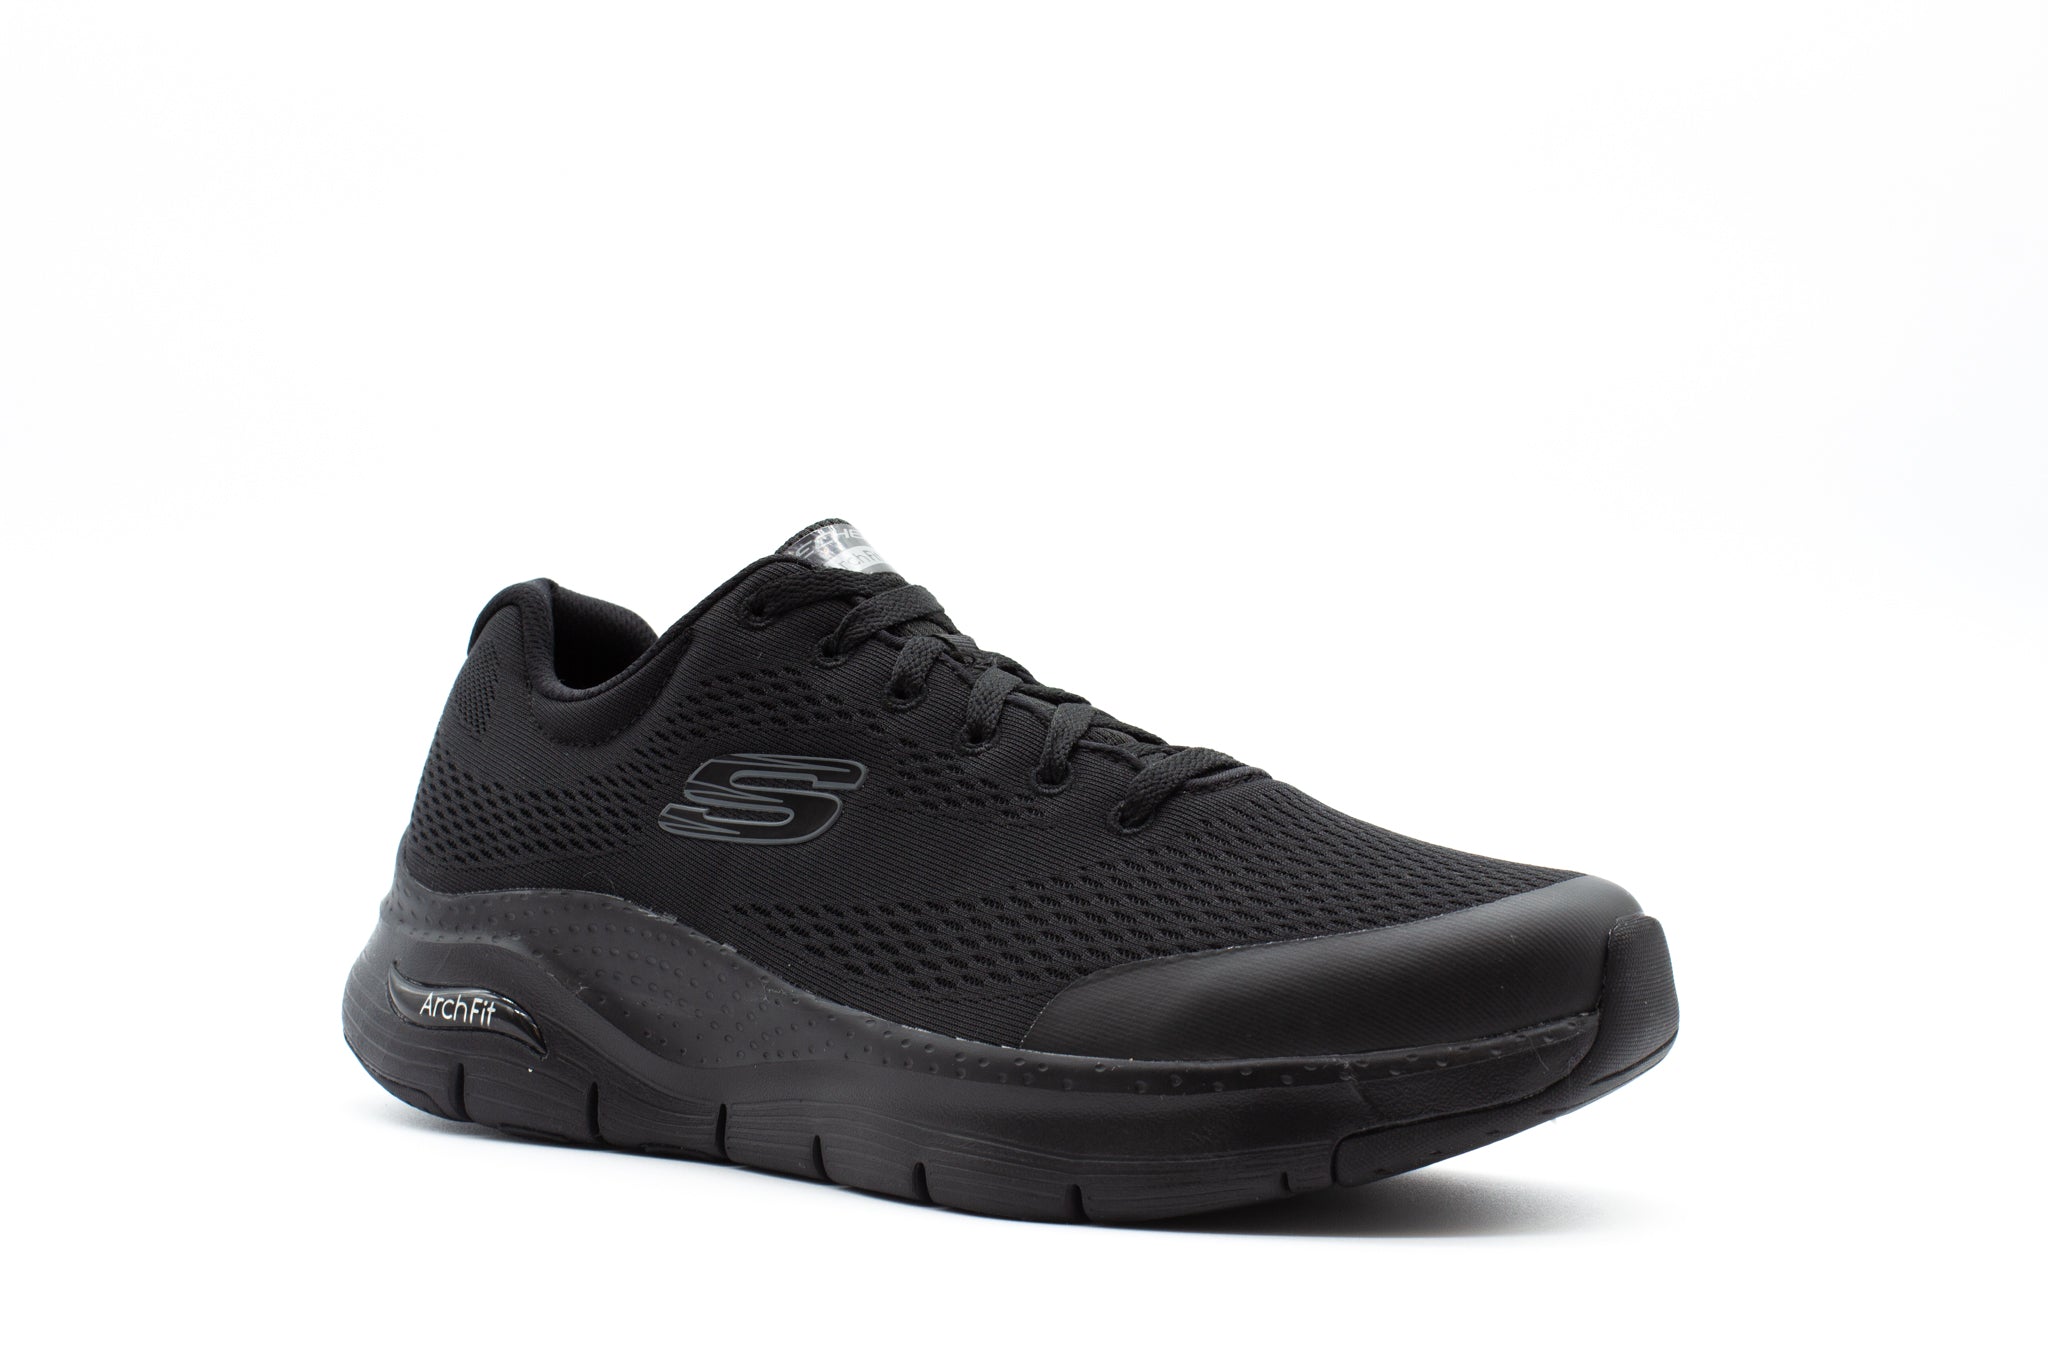 Skechers Mens Go Walk Arch Fit Sneaker, Grey, 7 UK (8